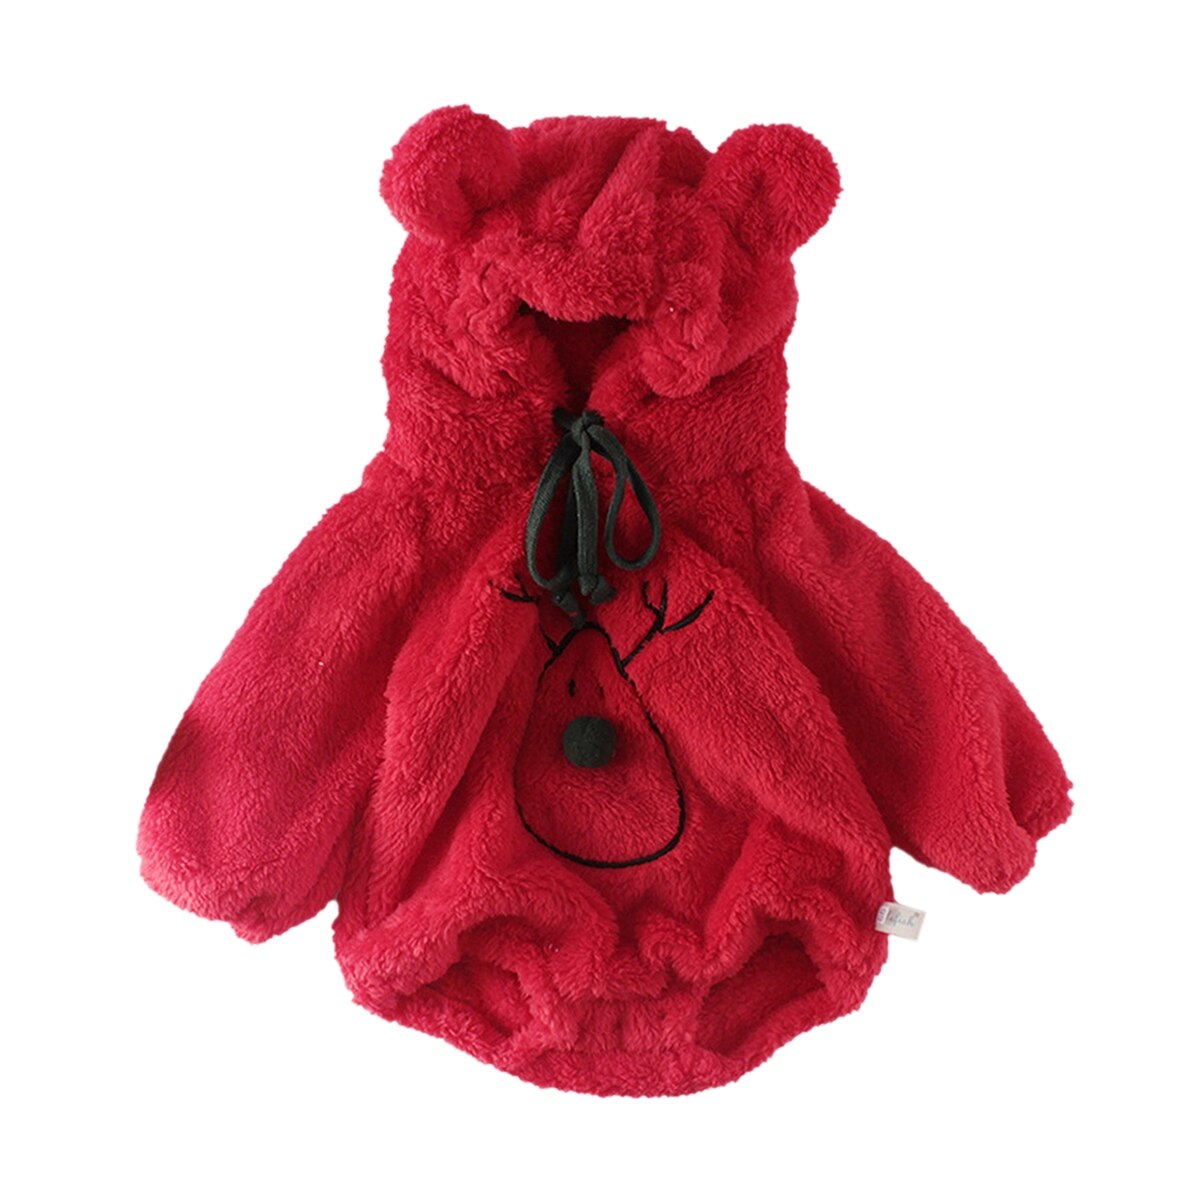 Spædbarn jul romper baby dreng piger langærmet hætteklædte snemand print med mønster i et stykke rød beige varm fleece hætteklædt tøj: Rød / 18-24m